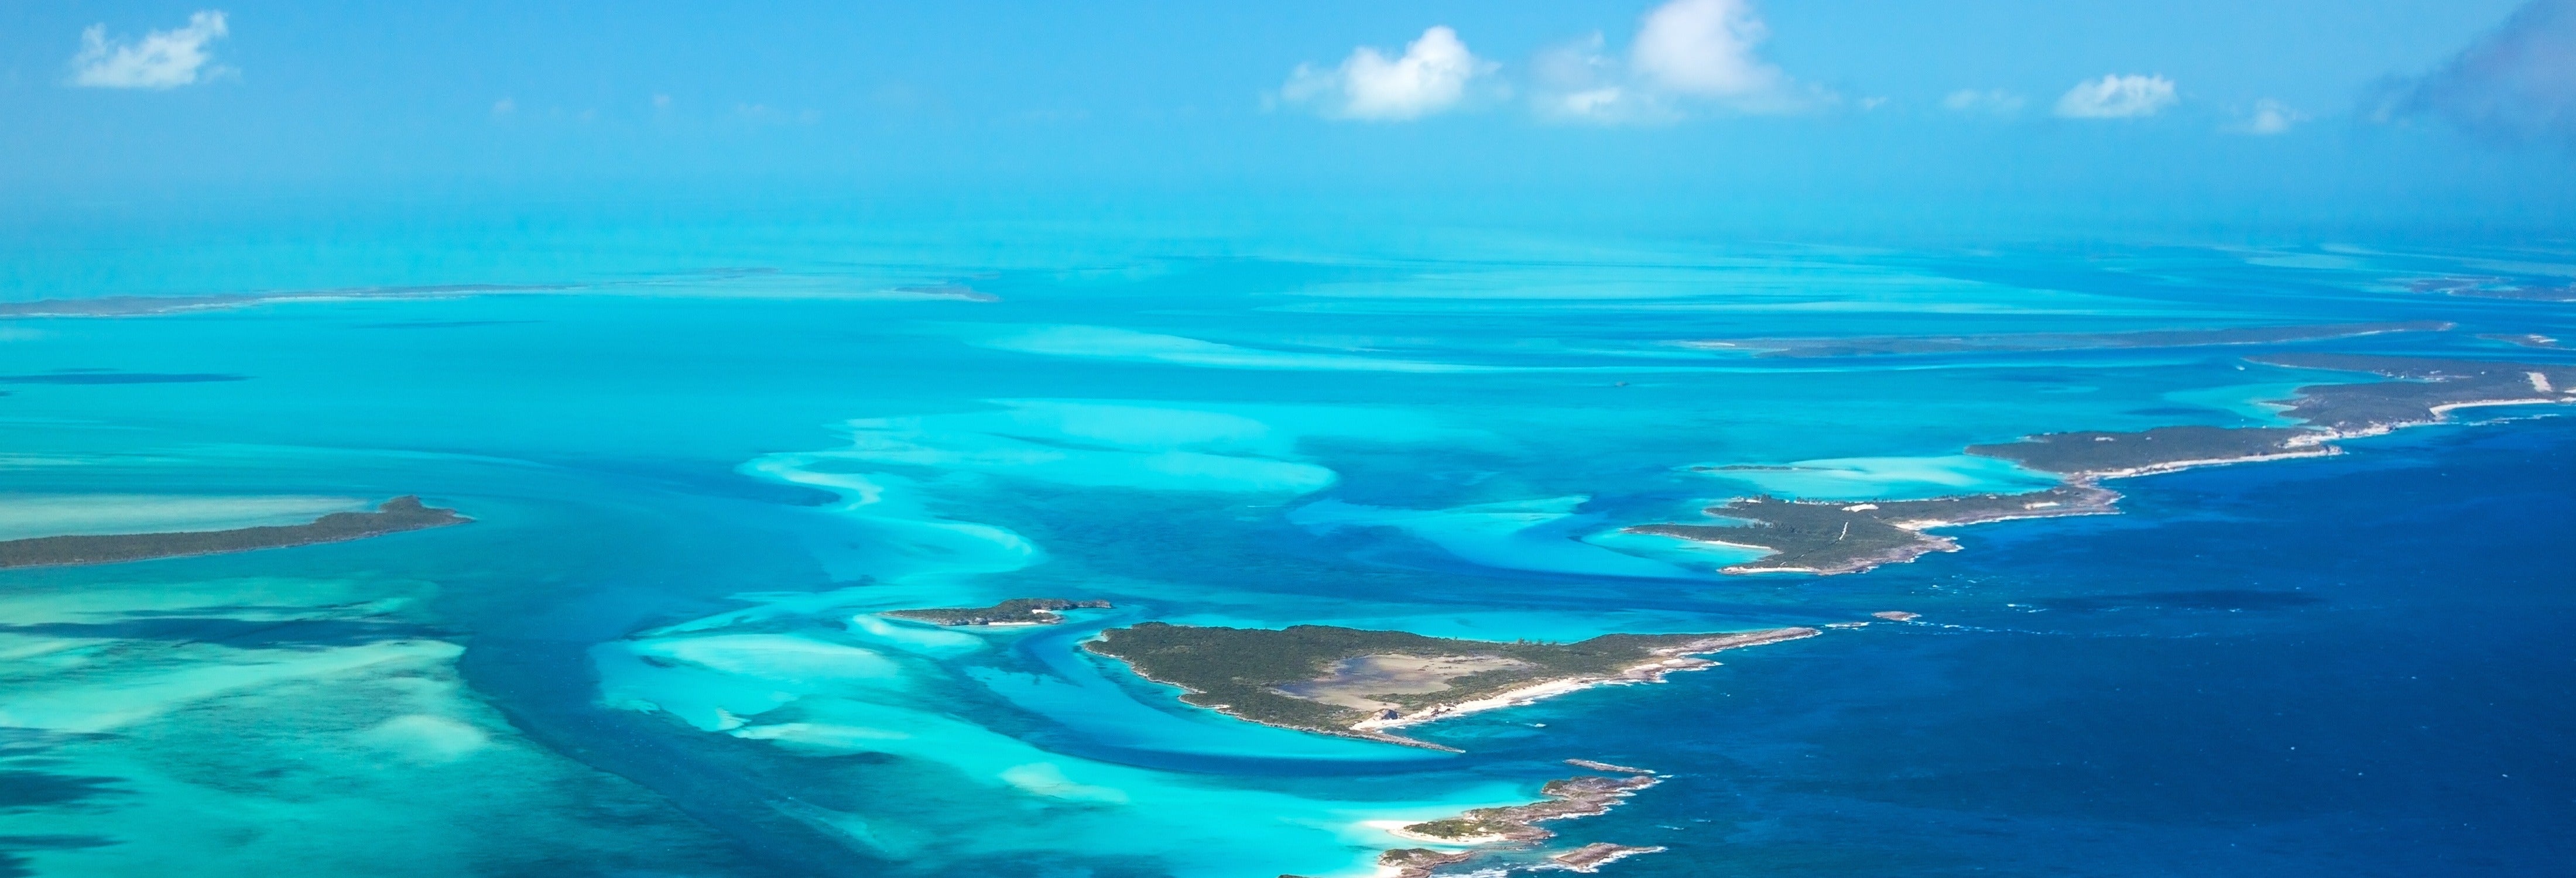 Excursão por conta própria às ilhas Bahamas